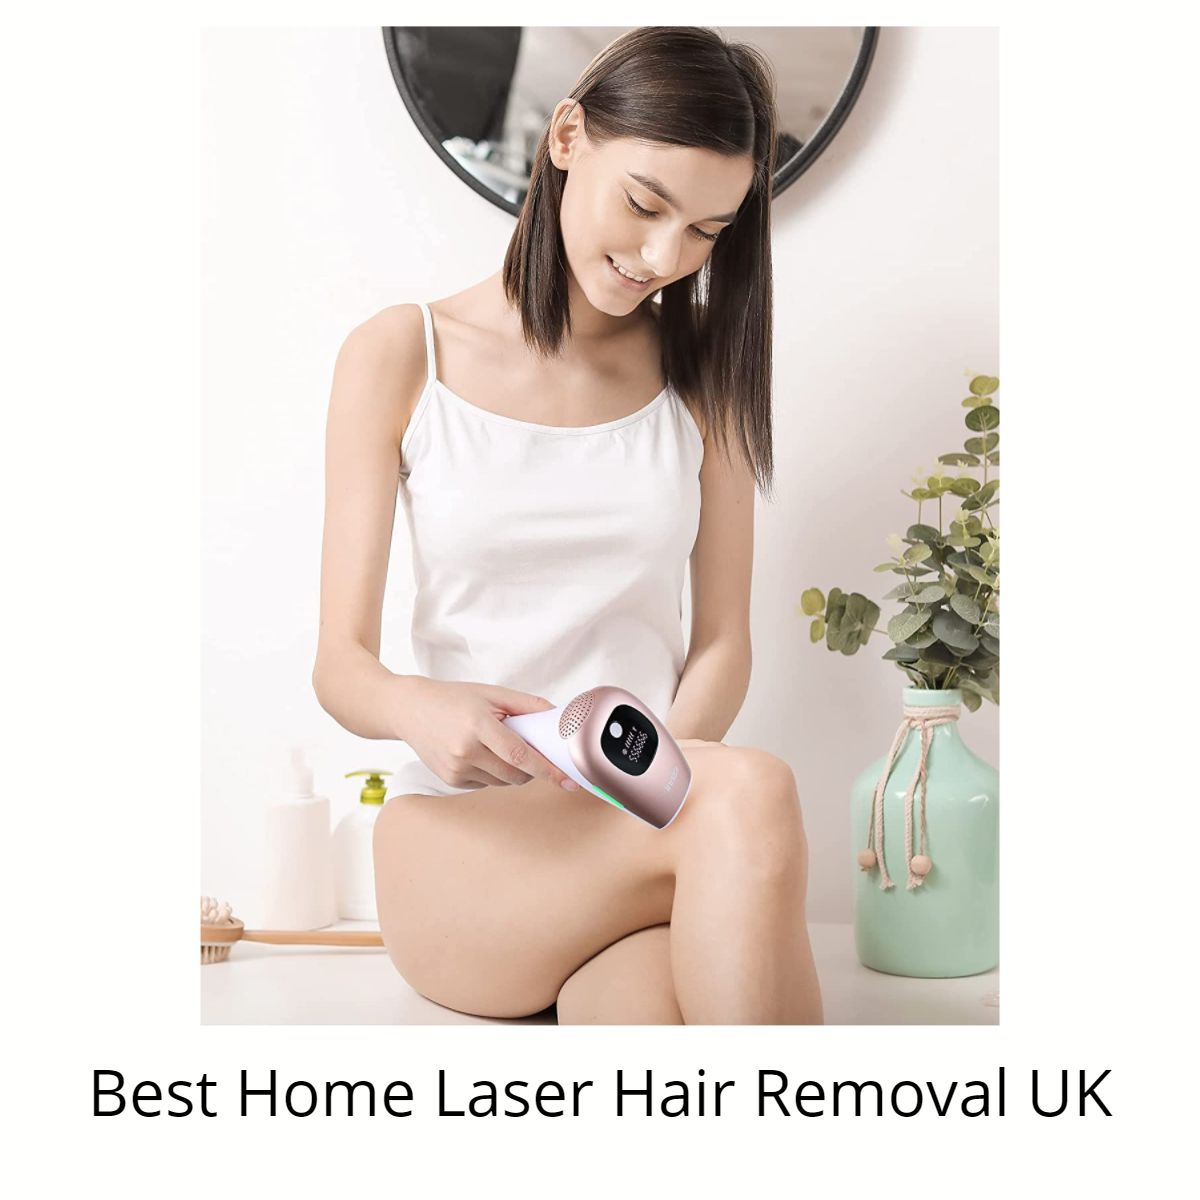 ipl hair removal uk